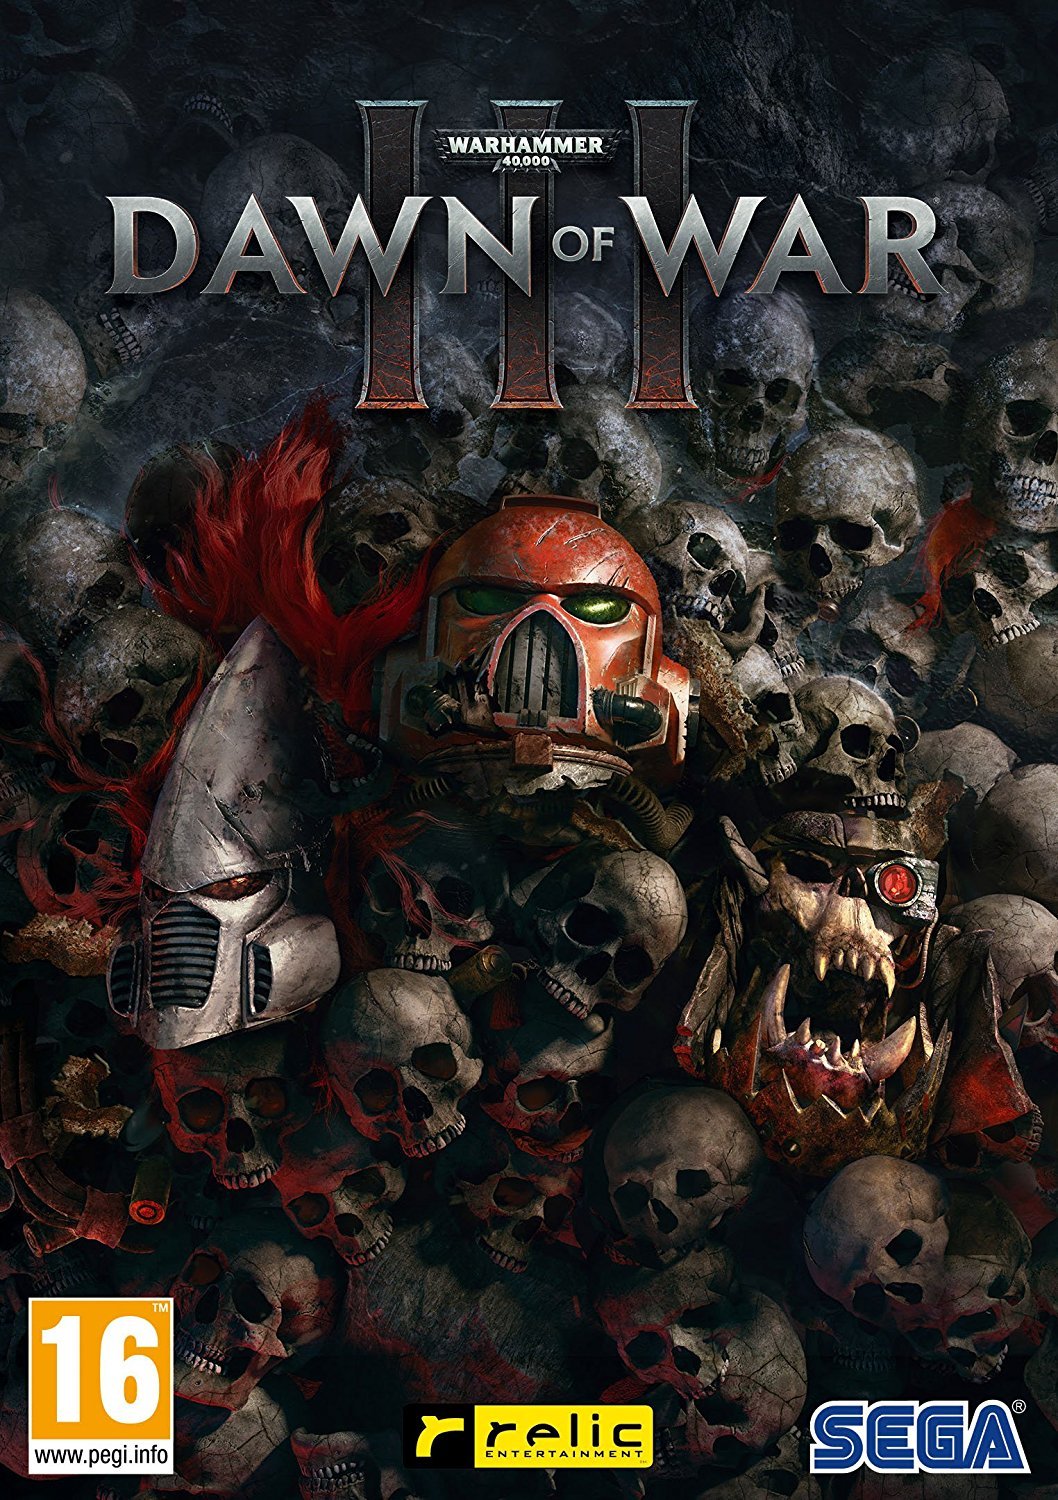 warhammer dawn of war 3 steam download